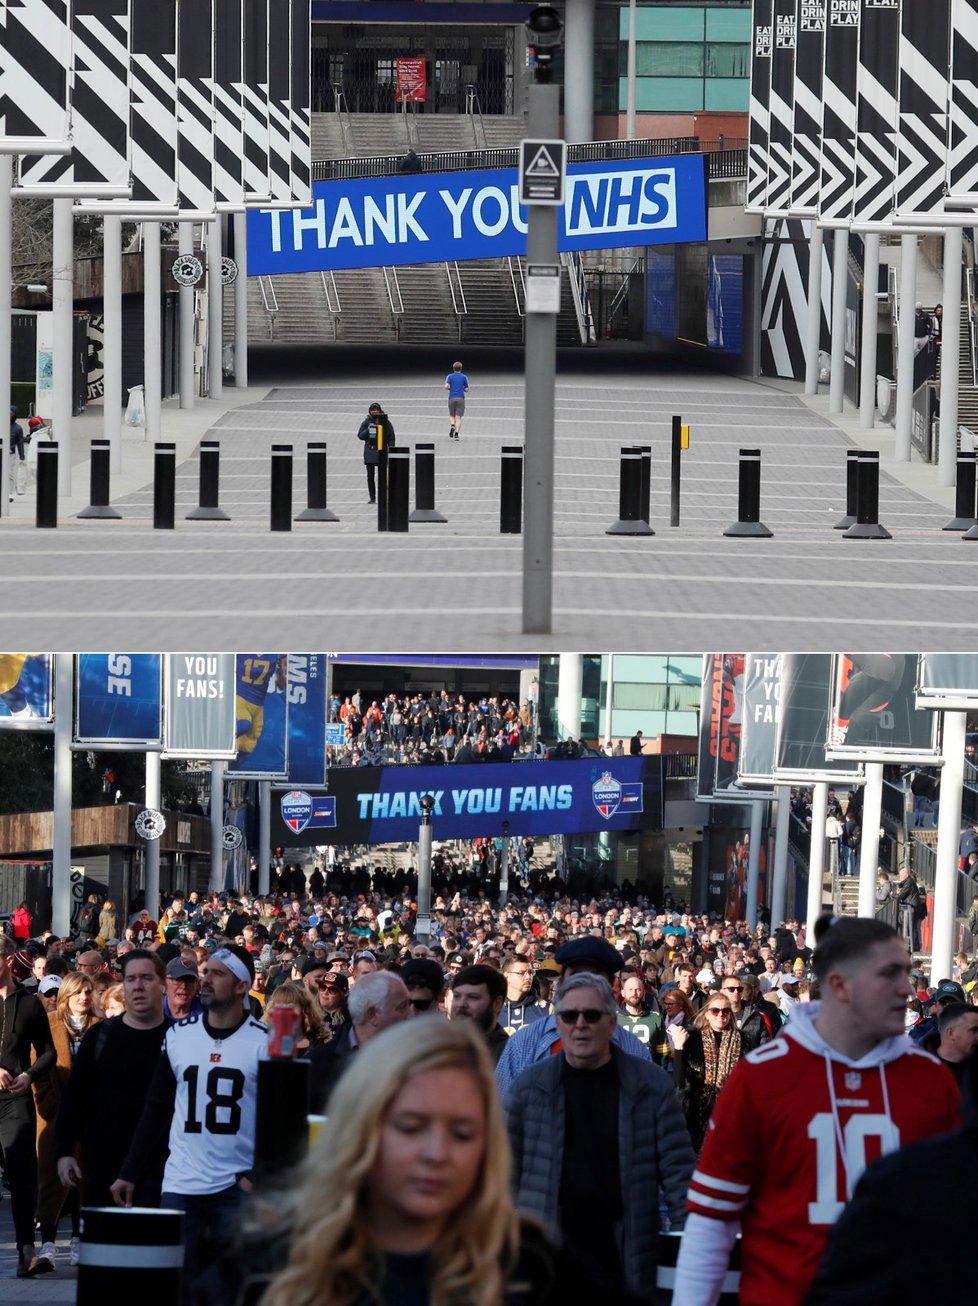 Porovnání před pandemií a nyní: ulice k stadionu Wembley v Británii